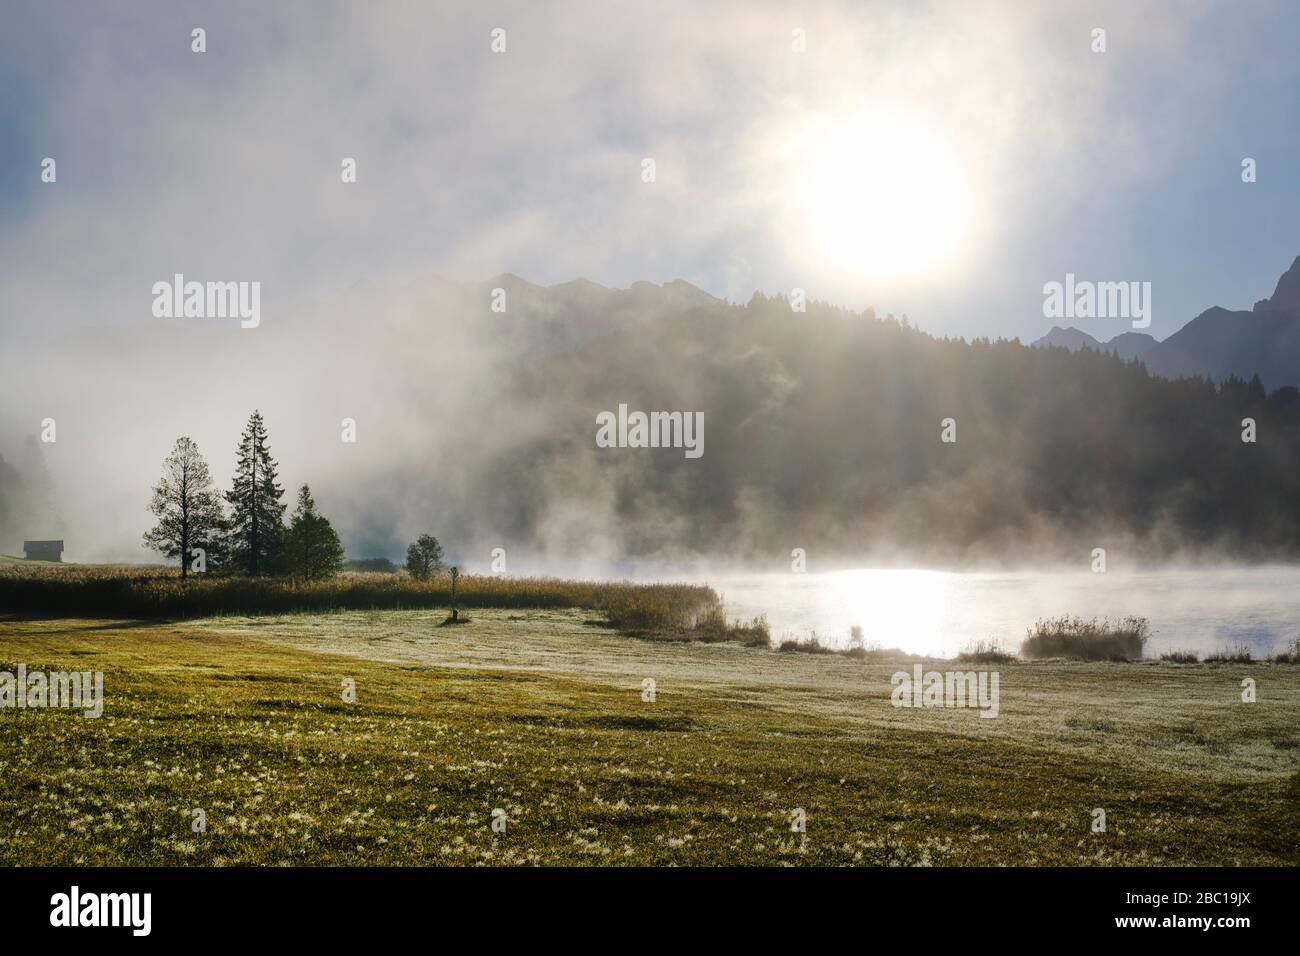 Sonnenaufgang mit Nebelschwaden am Geroldsee, bei Krün, Werdenfelser Land, Oberbayern, Bayern, Deutschland Foto Stock